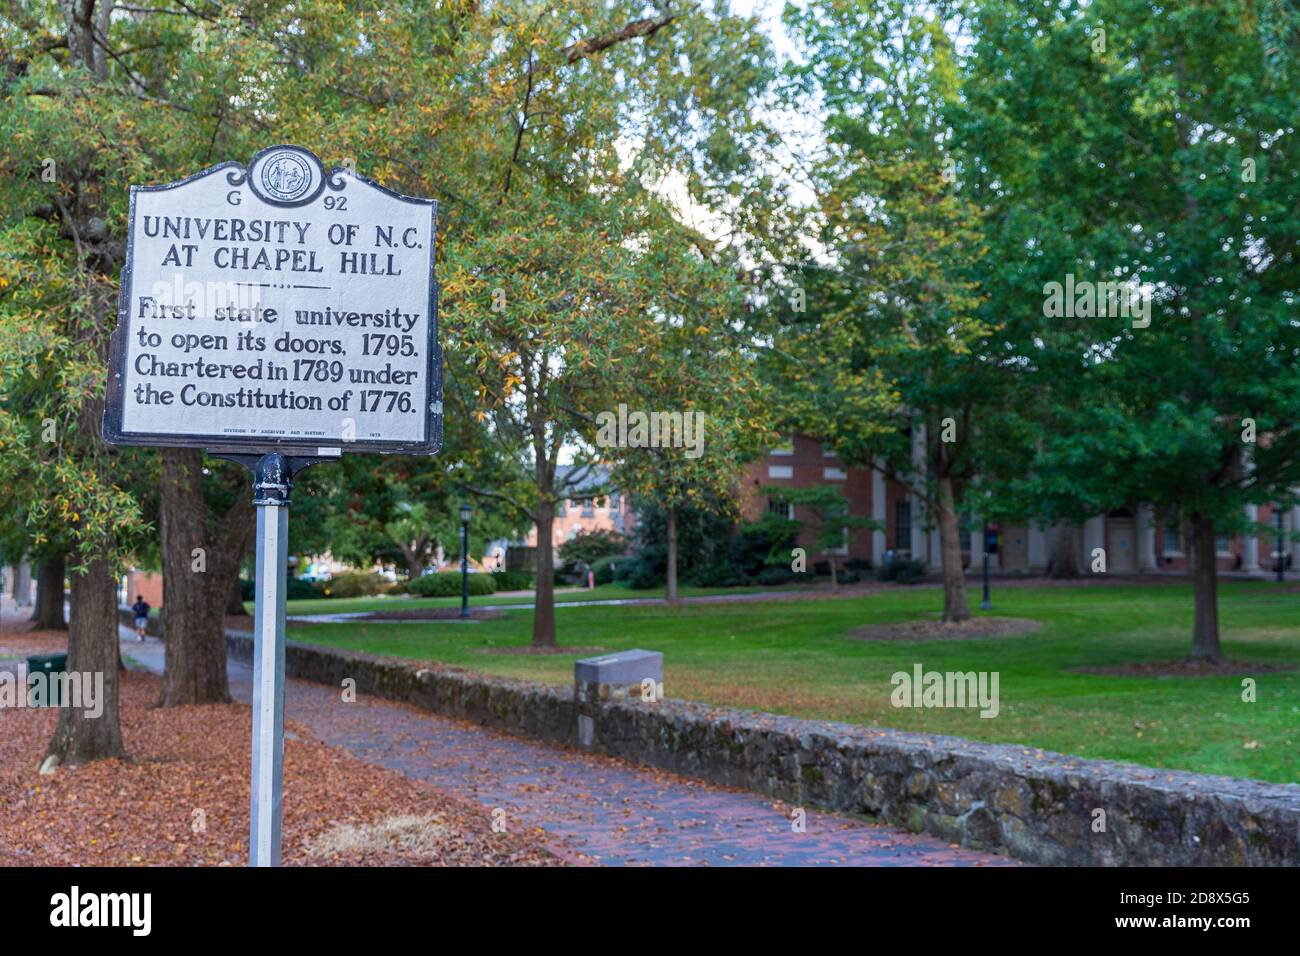 Chapel Hill, NC / USA - 22 ottobre 2020: Università della Carolina del Nord a Chapel Hill, UNC, marcatore storico, che segna la sua apertura nel 1795 Foto Stock